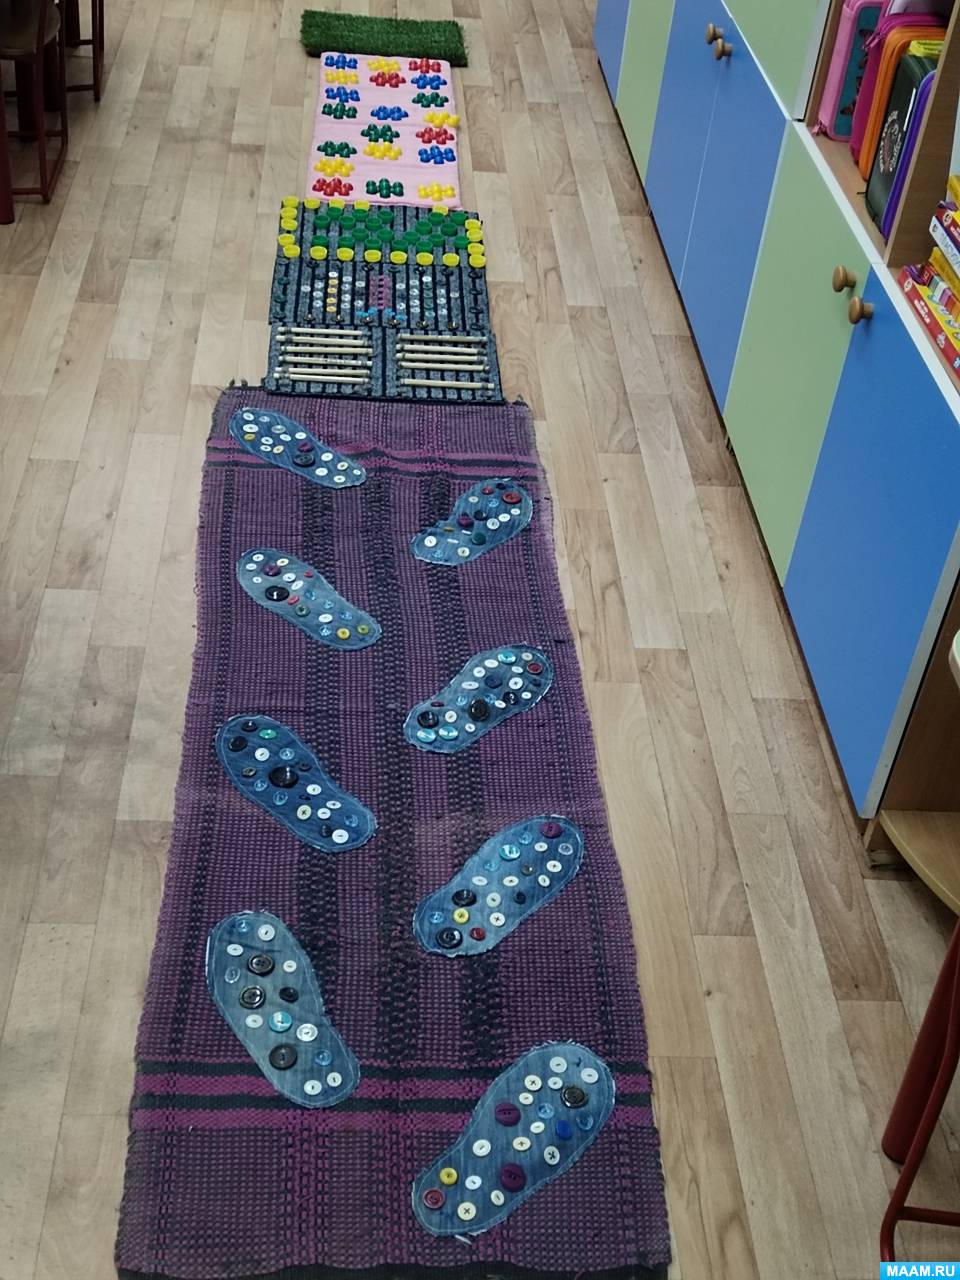 Как сделать массажный коврик для детей своими руками?